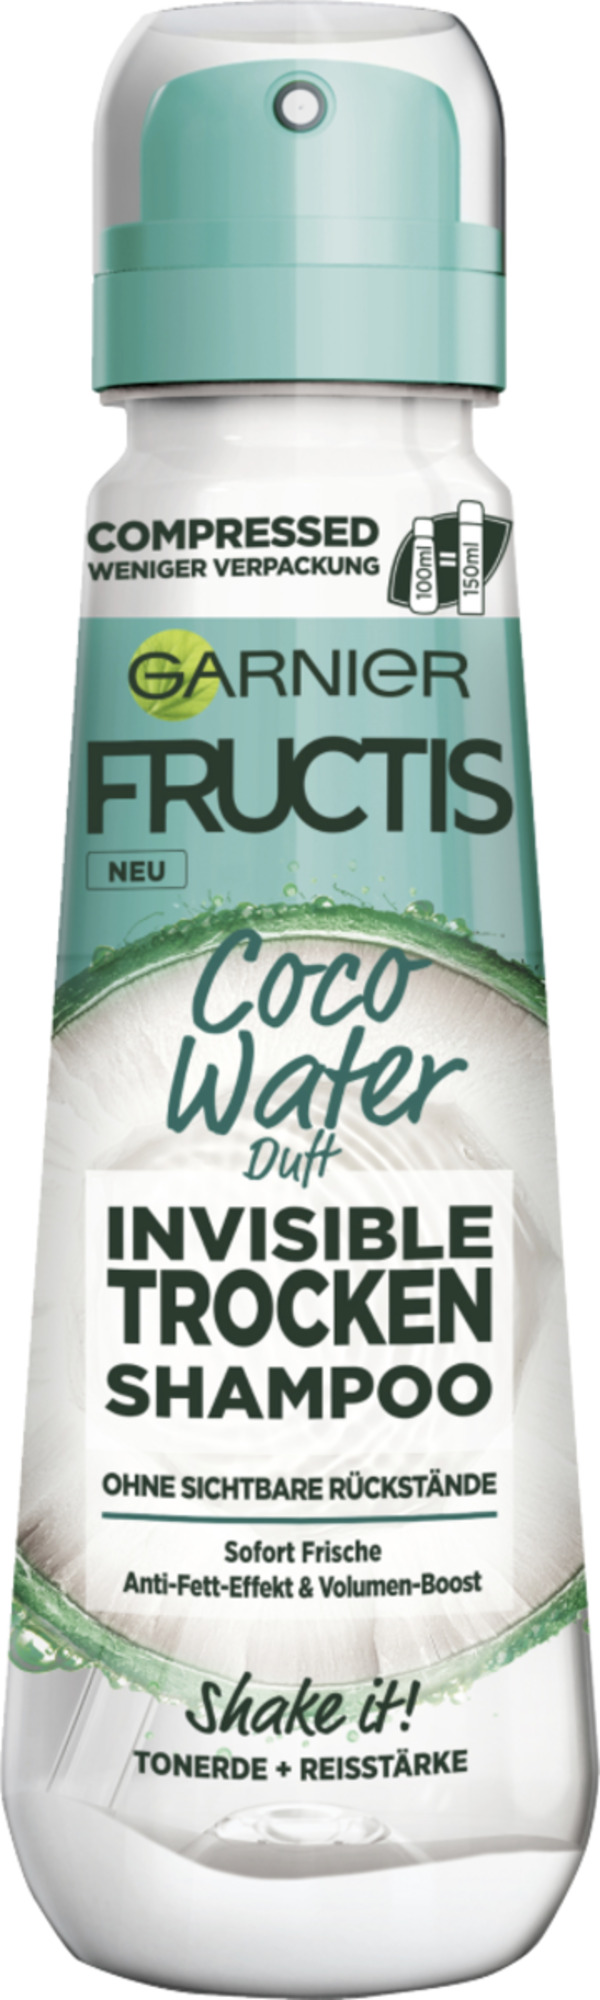 Bild 1 von Garnier Fructis Invisible Trockenshampoo Coco Water